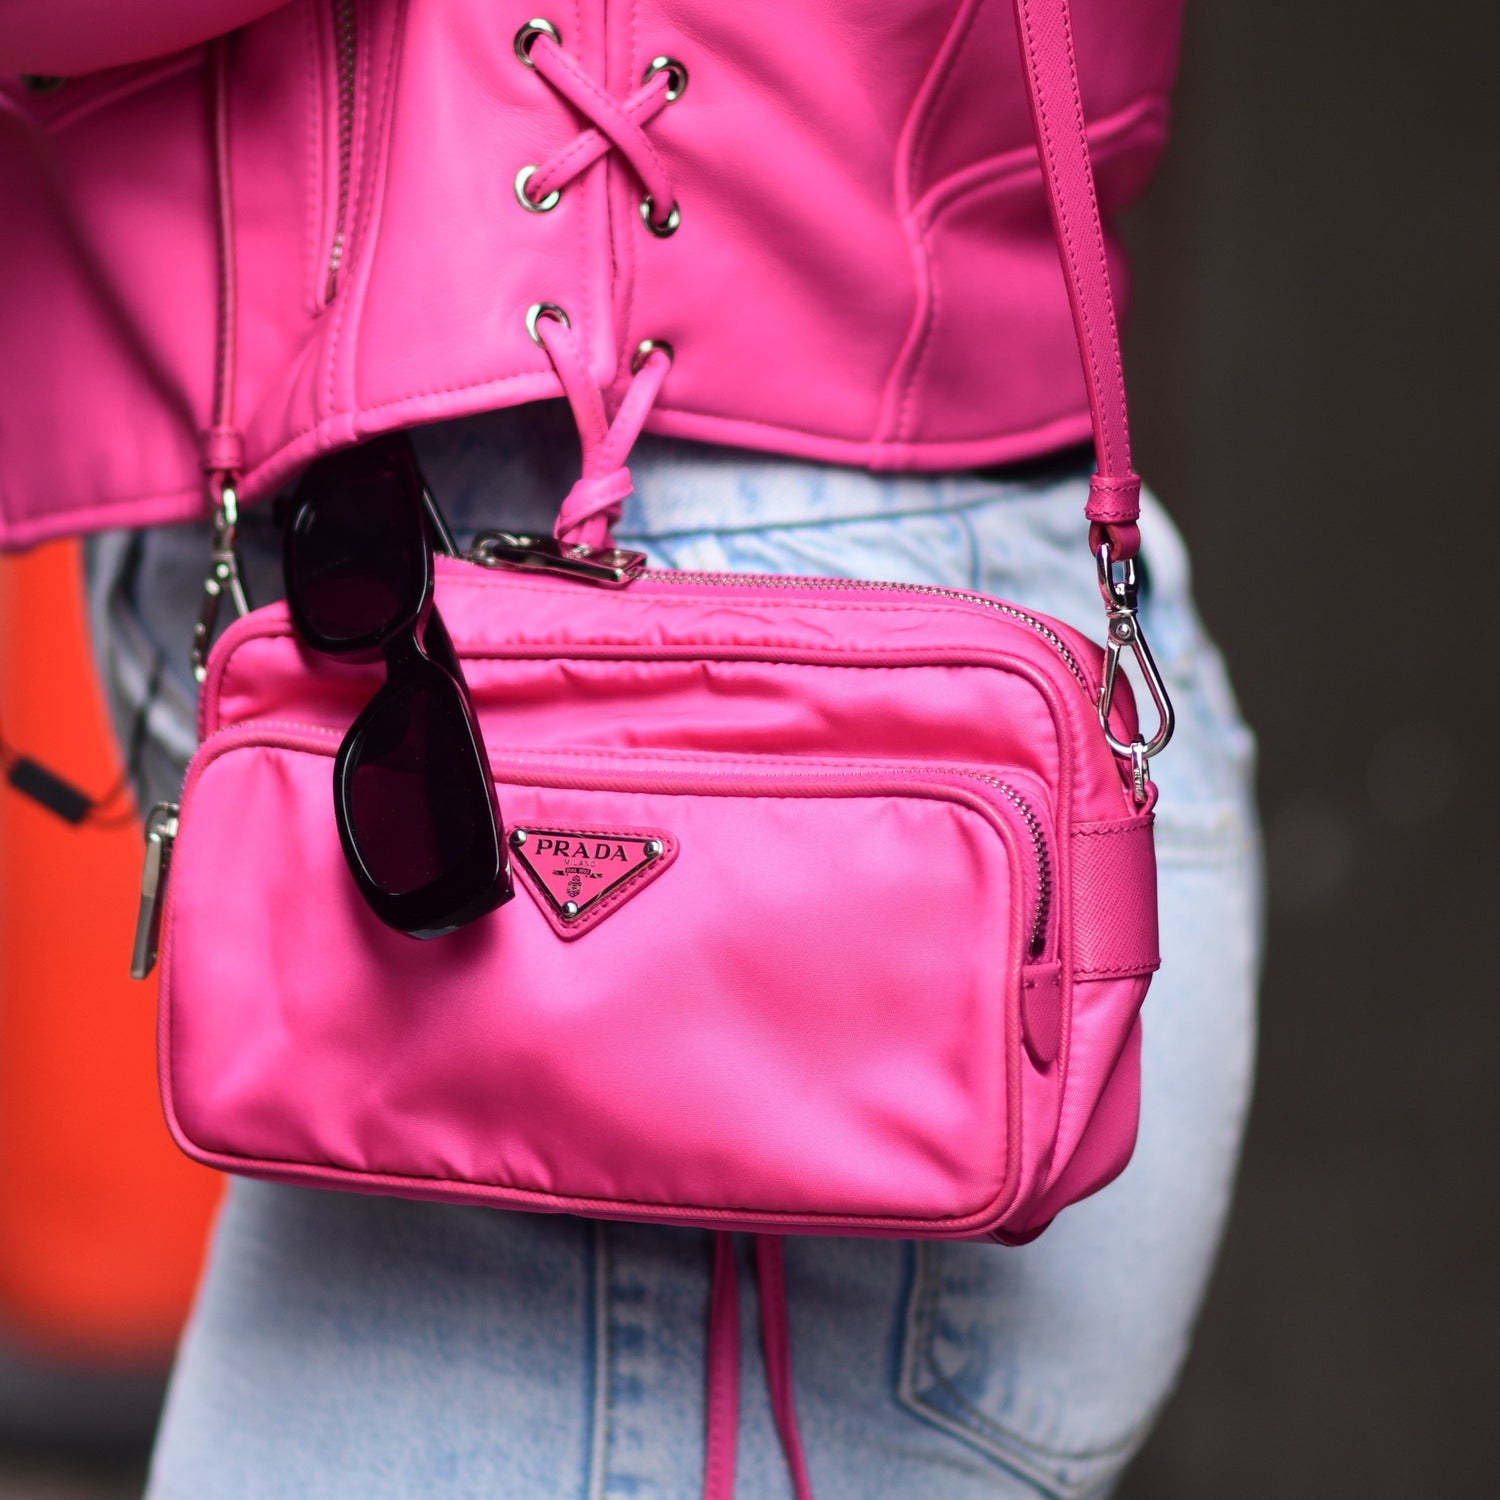 Prada Camera Bag Pink